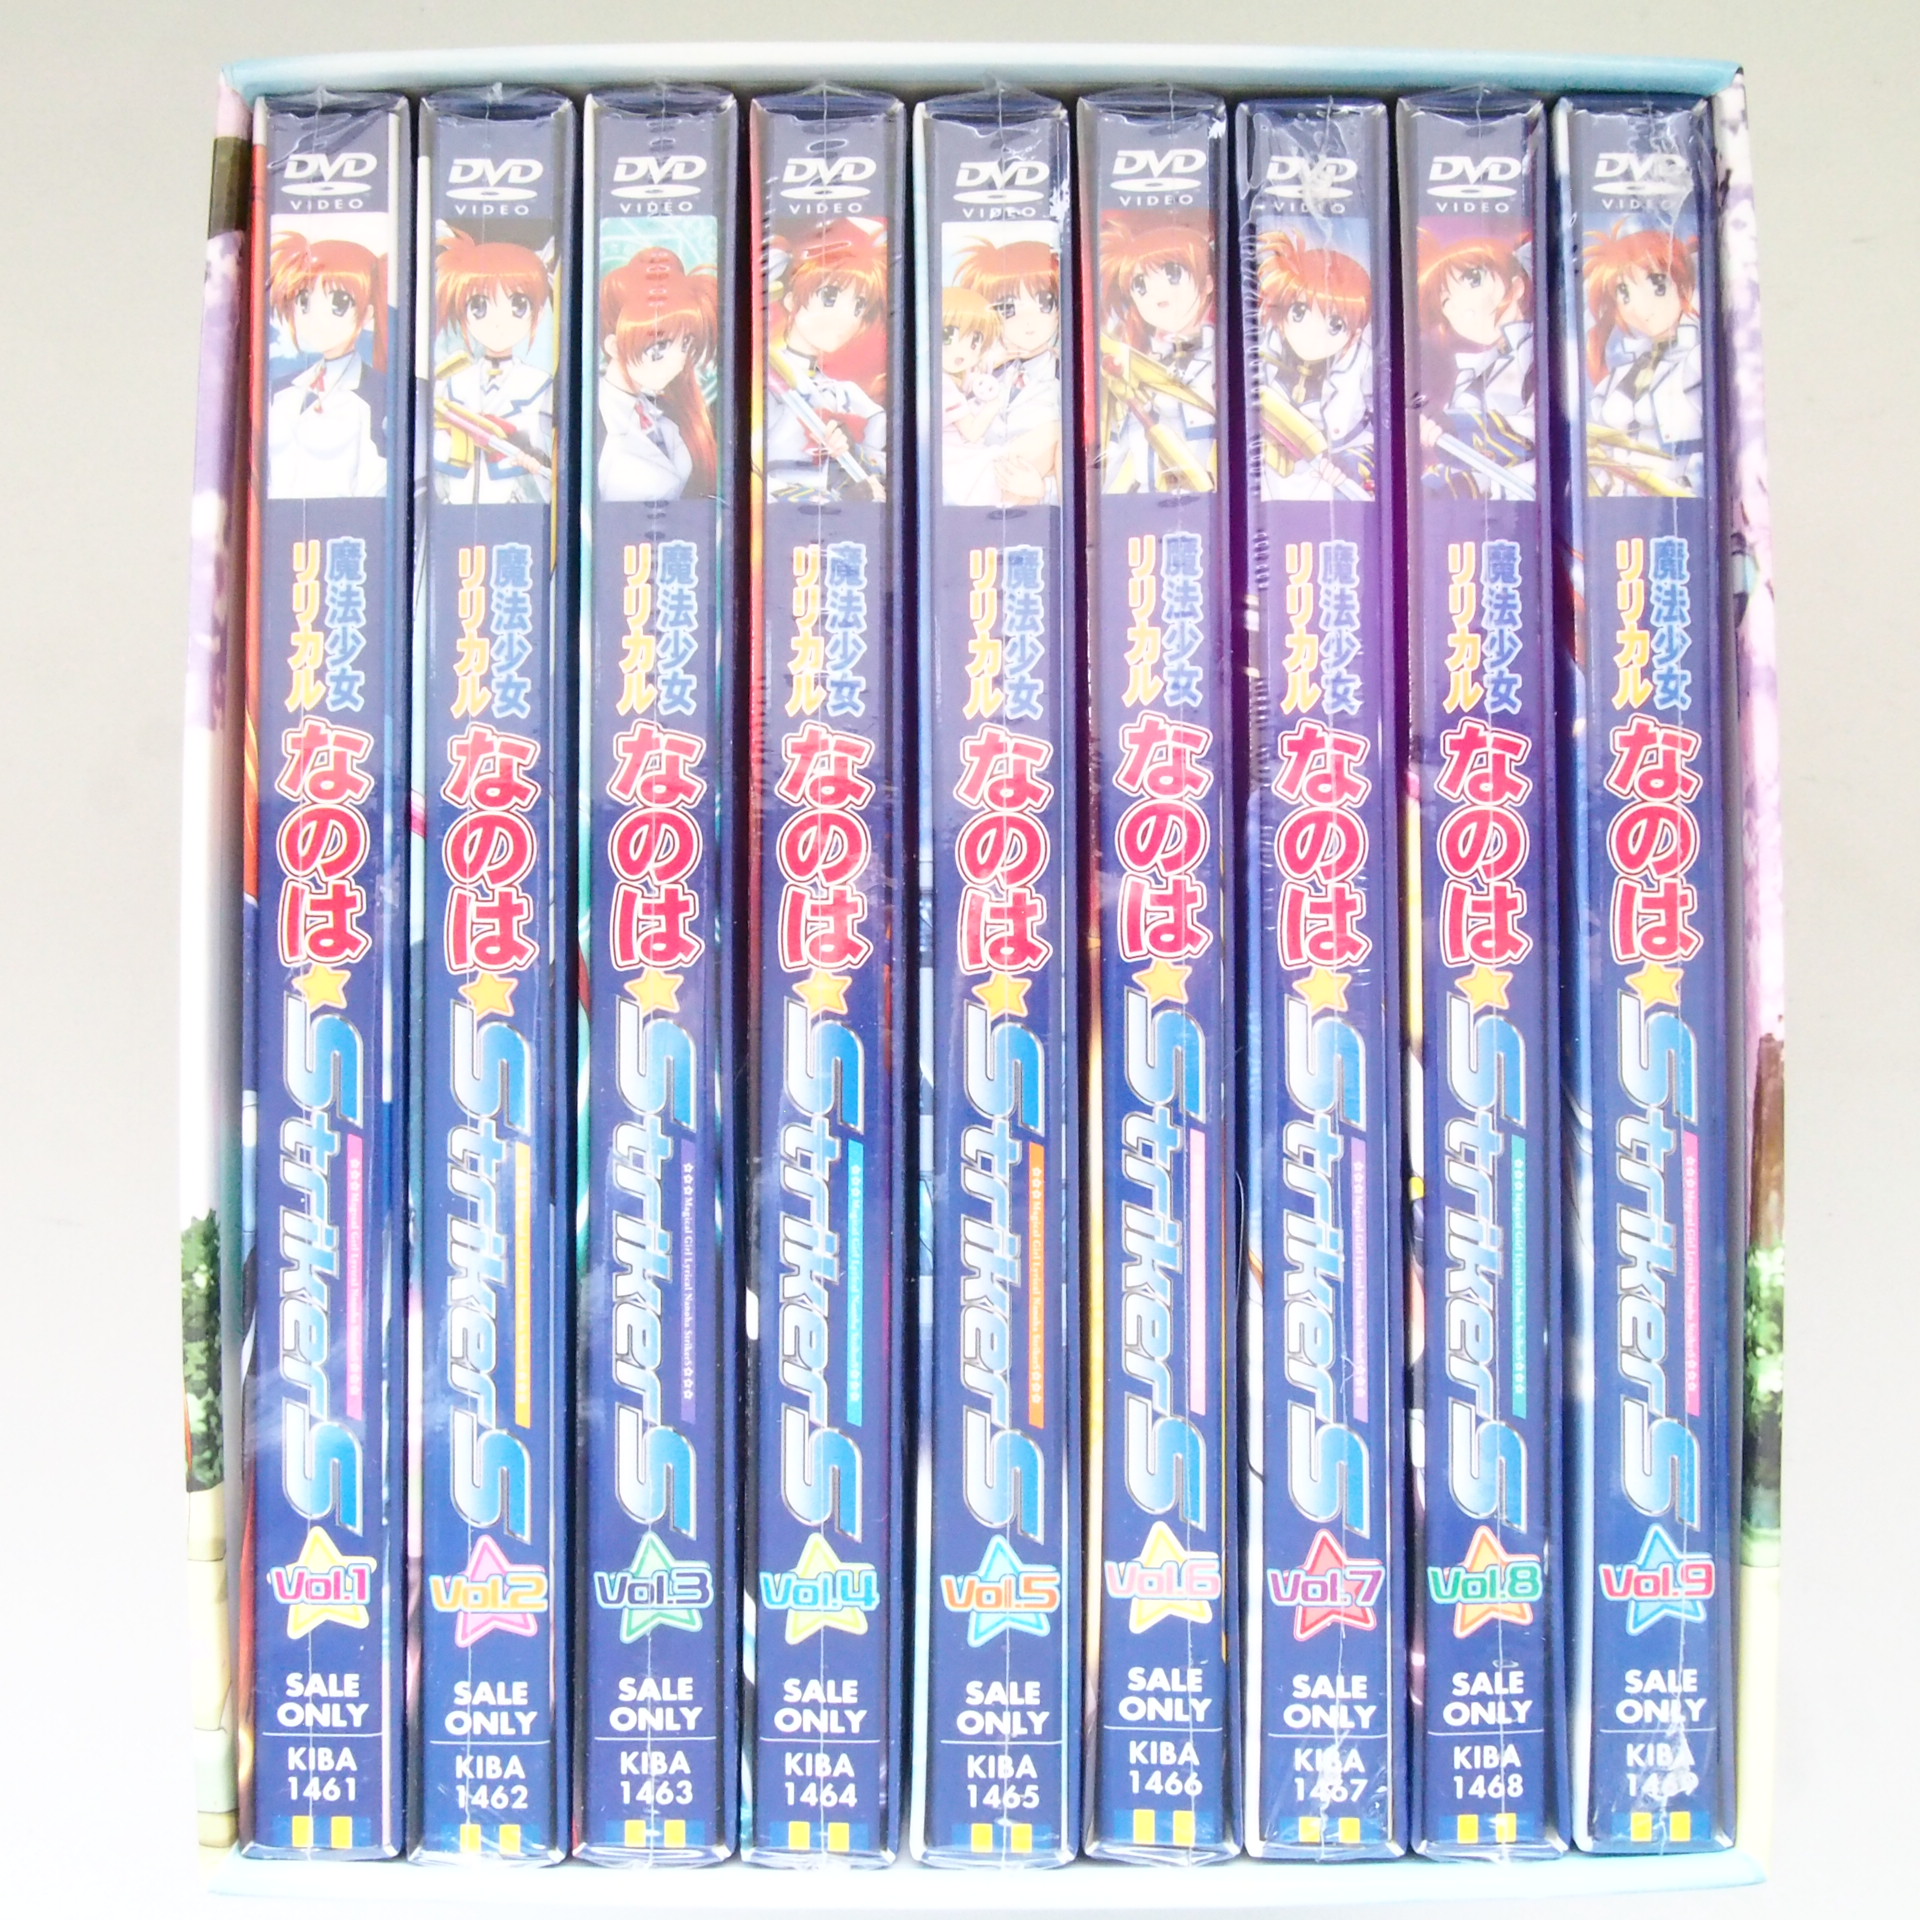 魔法少女リリカルなのはStrikerS DVD 初回版 全9巻セット高価買取